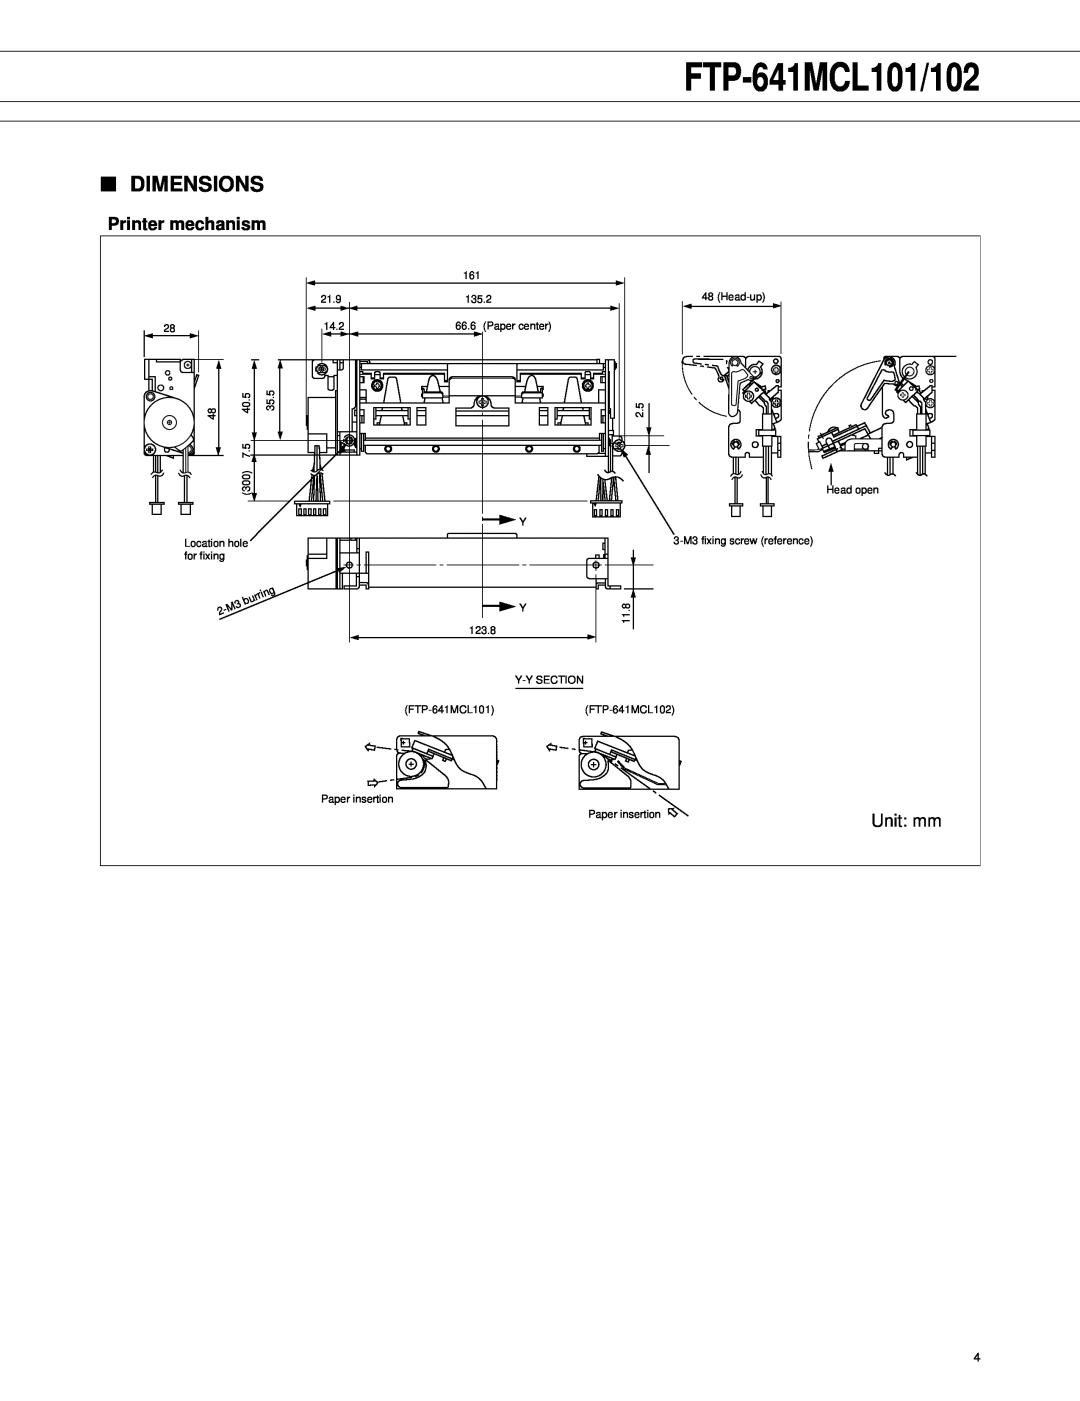 Fujitsu FTP-641MCL101/102 manual Dimensions, Printer mechanism 